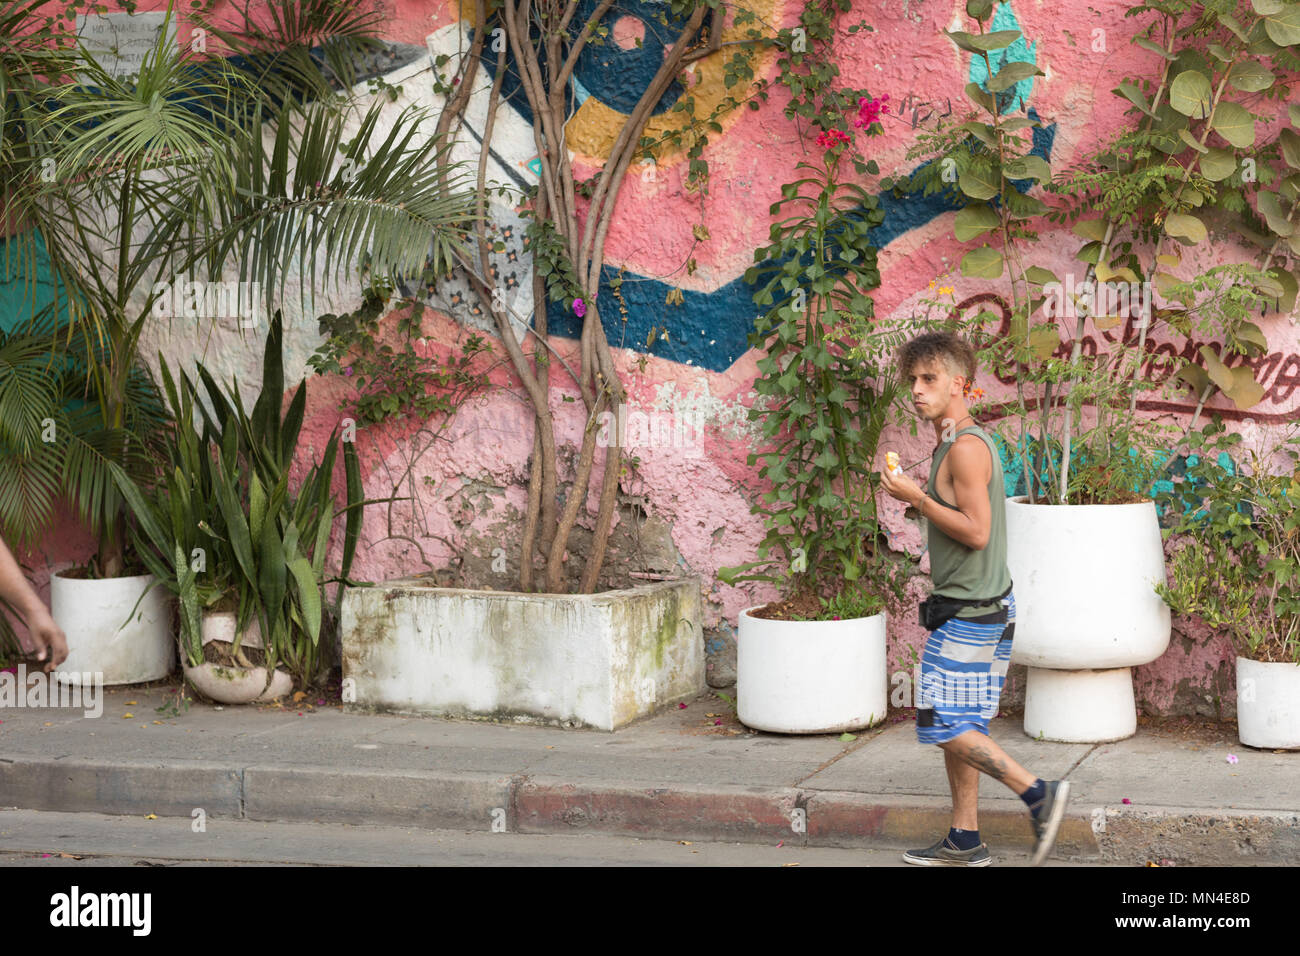 Les rues colorées de Getsemani, Carthagène, Colombie, Amérique du Sud Banque D'Images